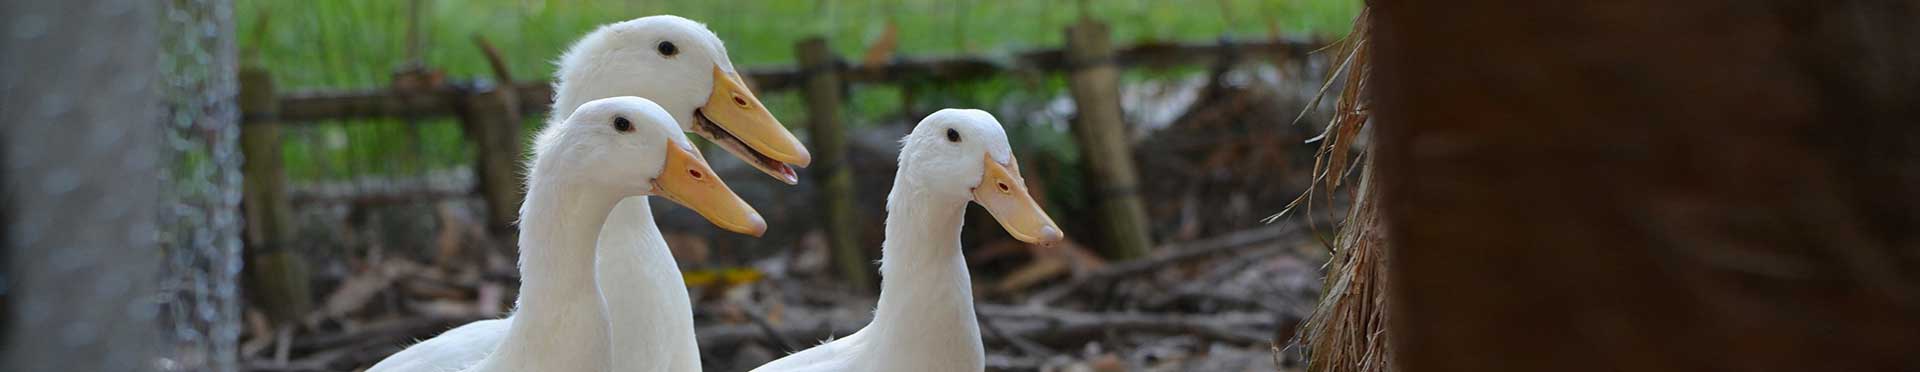 Implantación de GMP en granja de patos